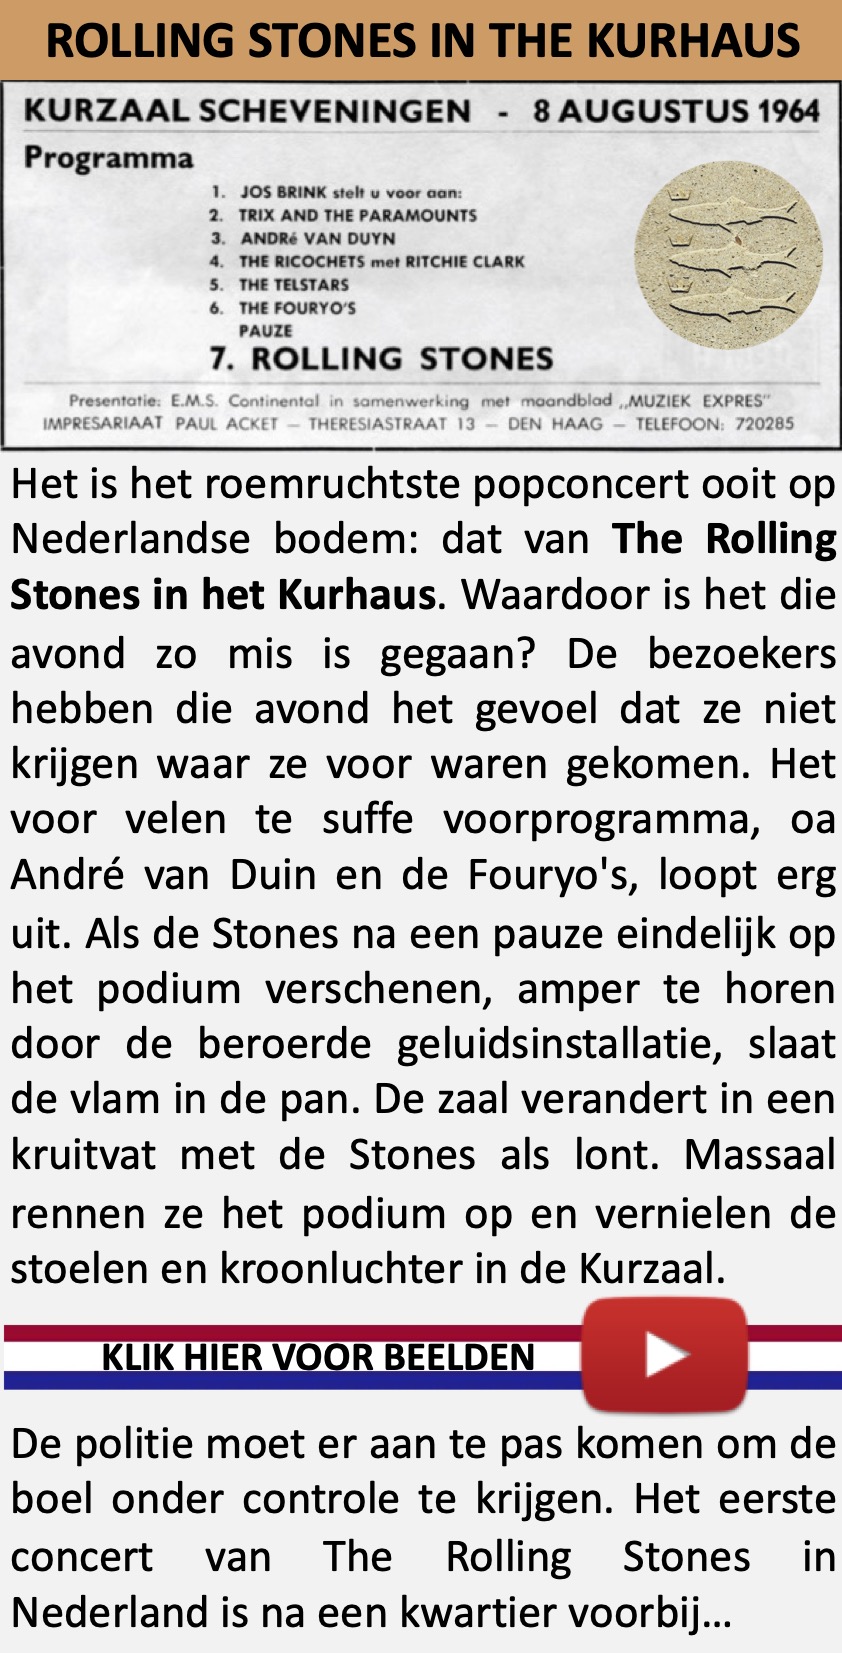 The Rolling Stones in het Kurhaus. De wilde jaren ‘60 begonnen in ons land op 8 augustus 1964